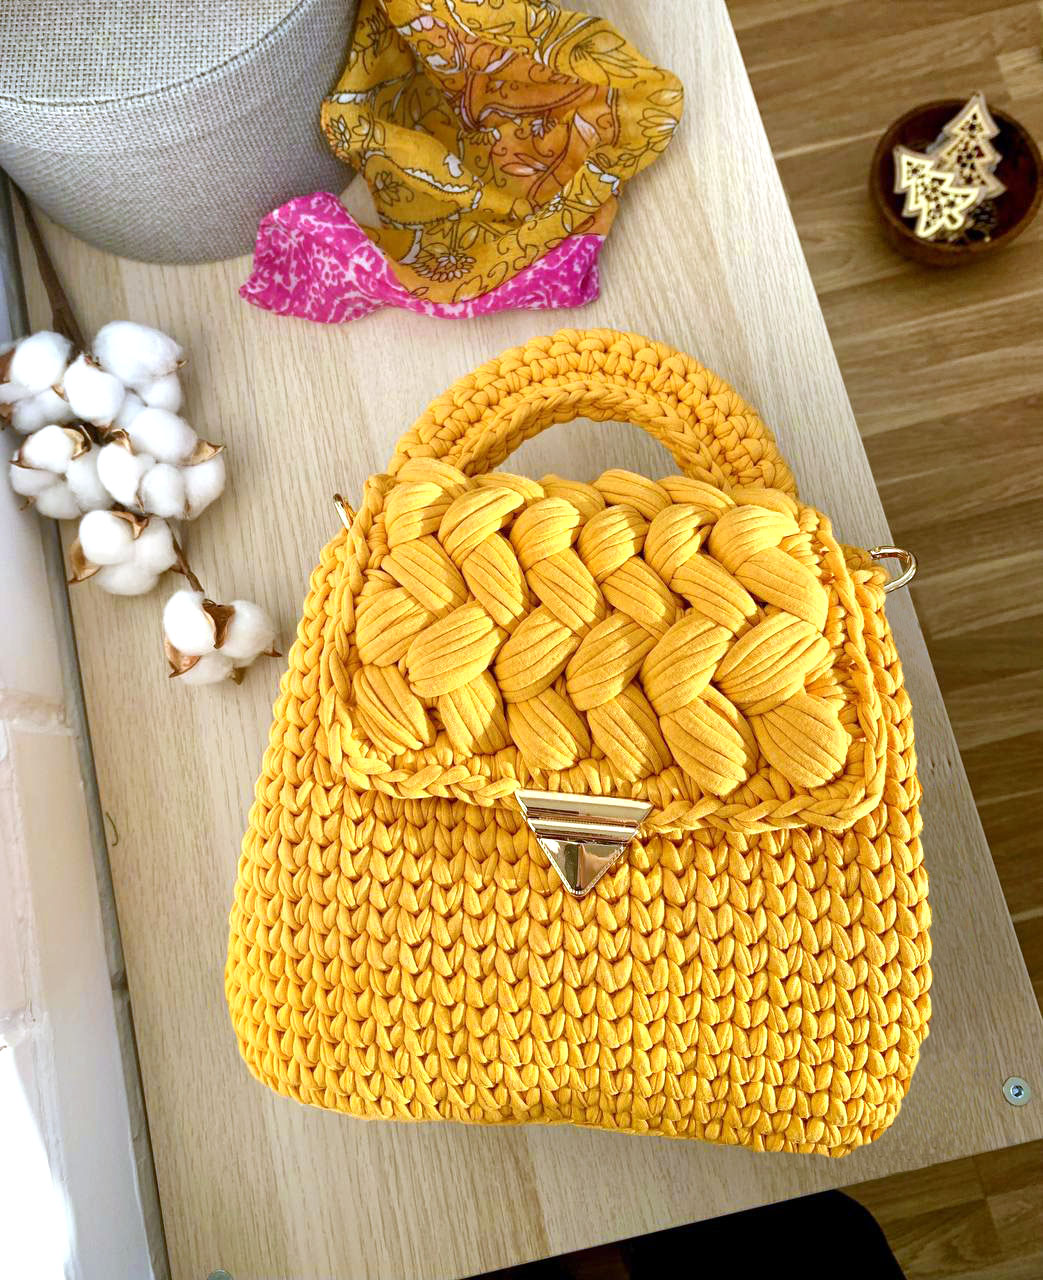 T-SHIRT YARN CLUTCH – FREE crochet pattern